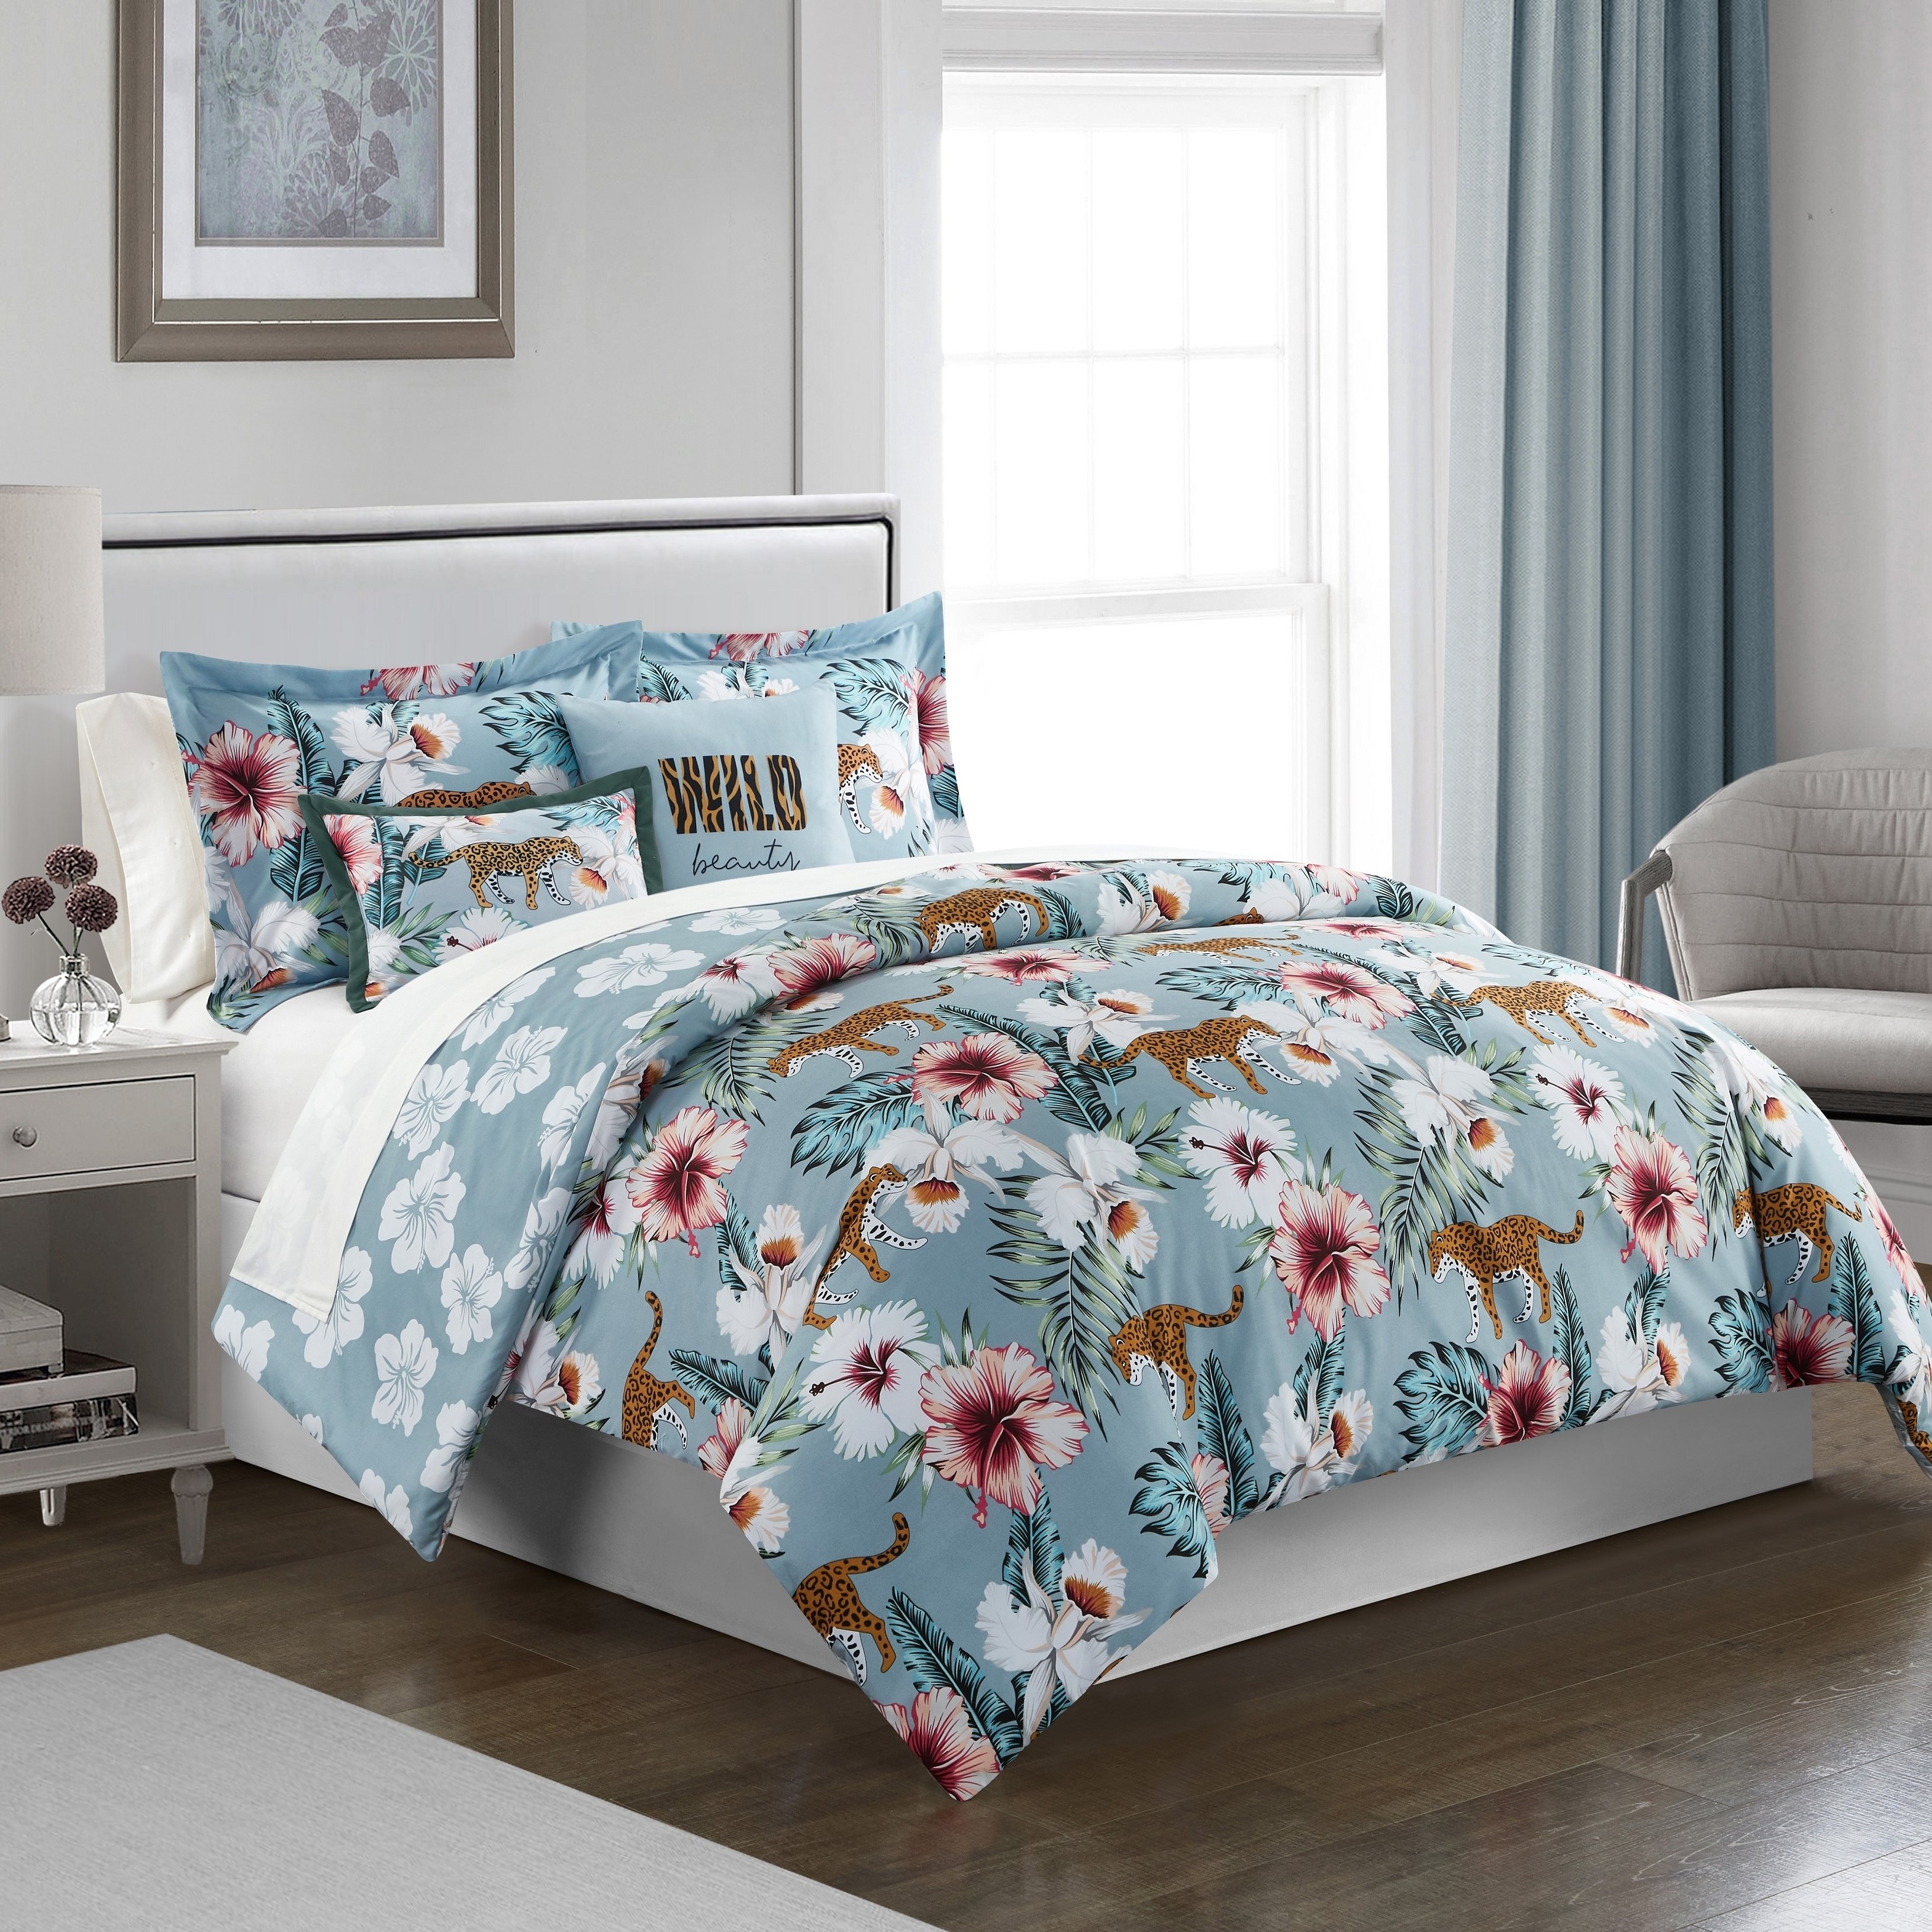 Emeraude 3 Piece Reversible Quilt Set Floral Print Cursive Script Design Bedding - Blue, Twin